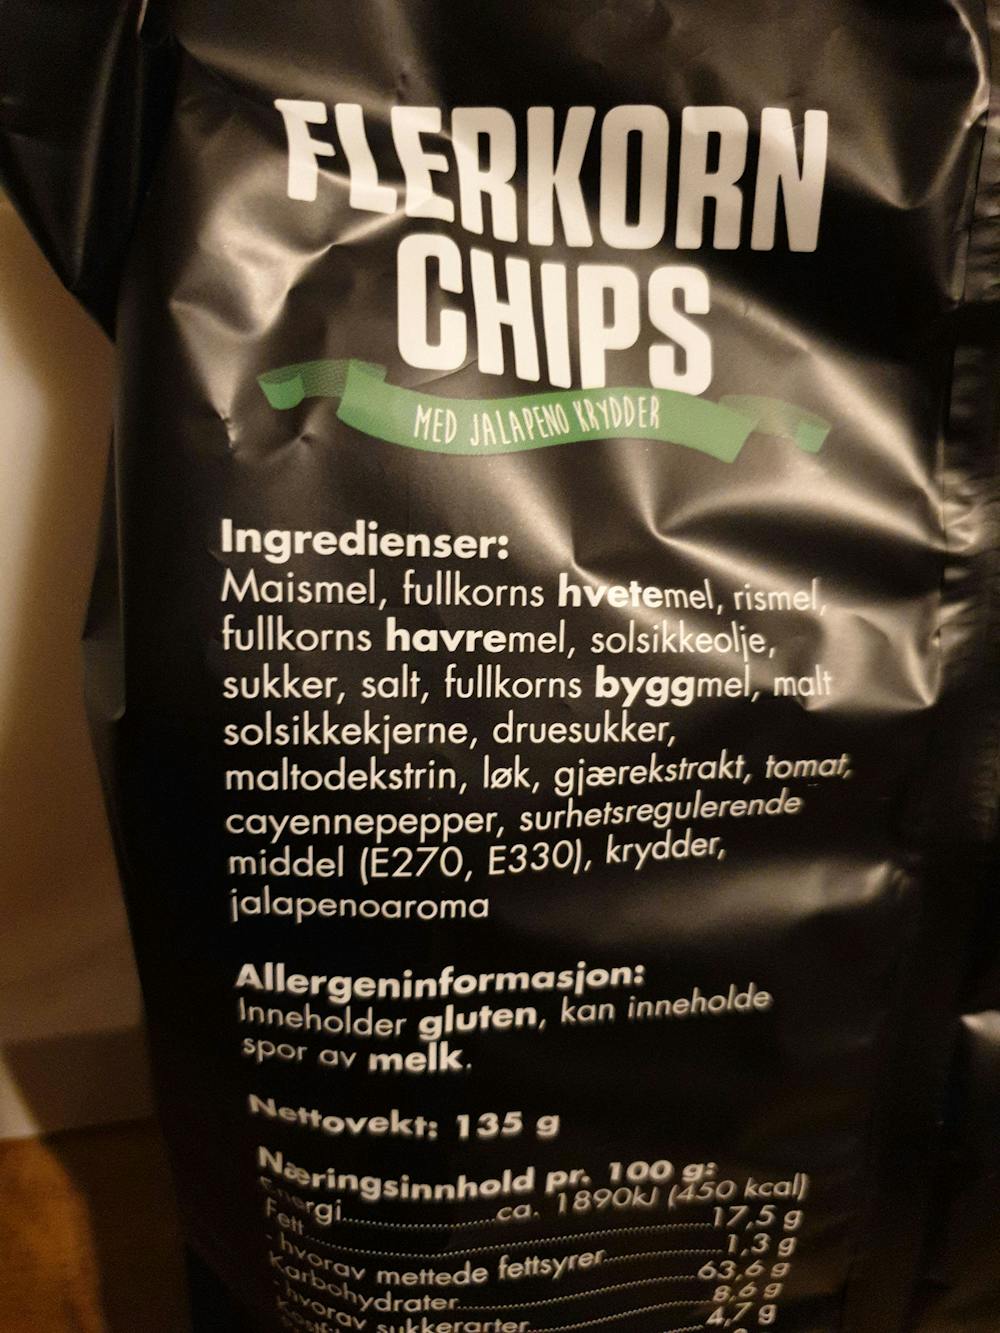 Ingredienslisten til Luxus Flerkorn chips med jalapeni krydder